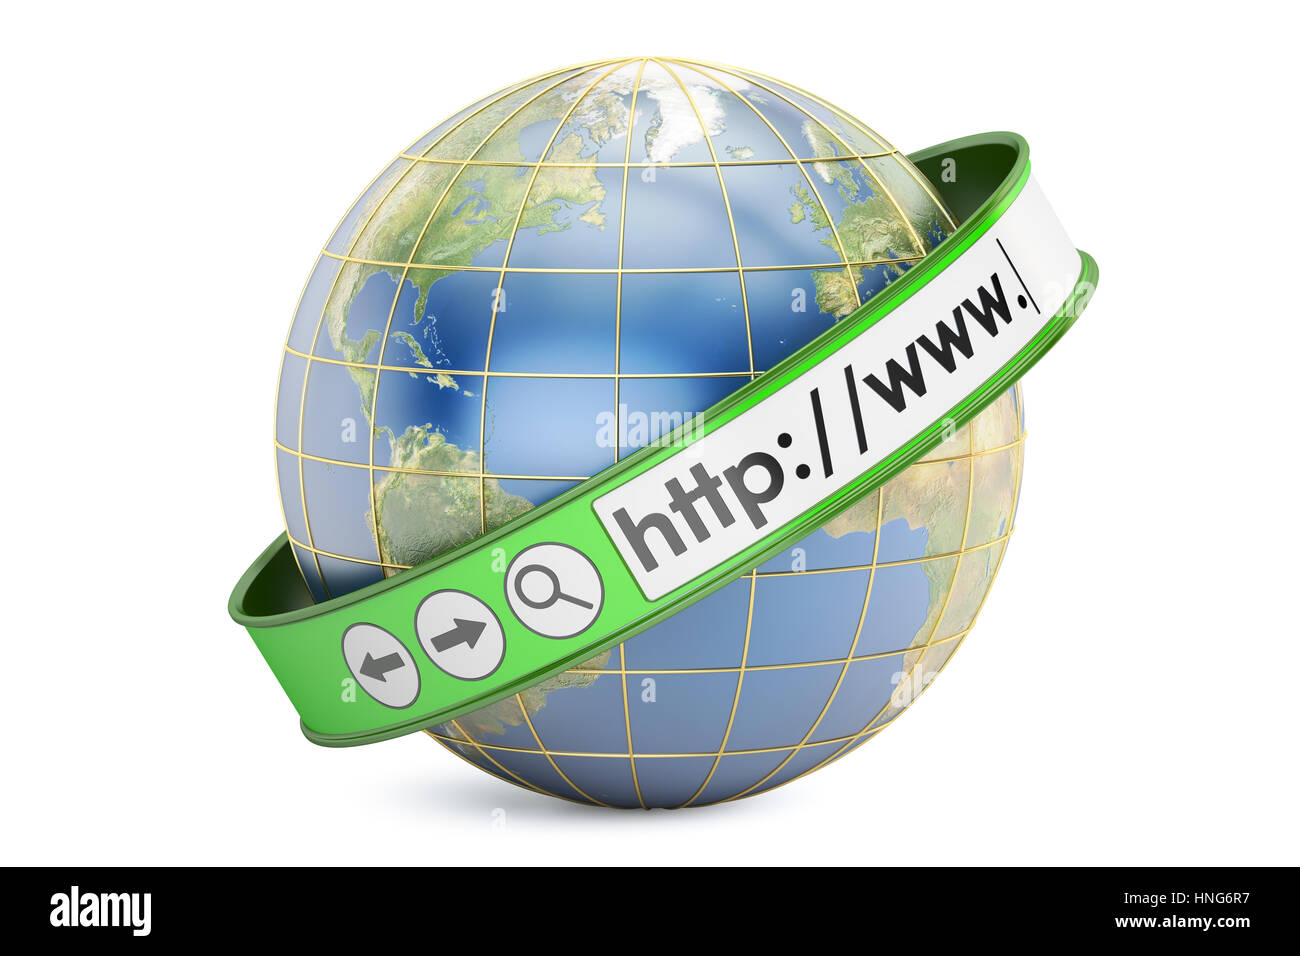 Globale Internet-Kommunikations-Konzept, 3D-Rendering isolierten auf weißen Hintergrund Stockfoto